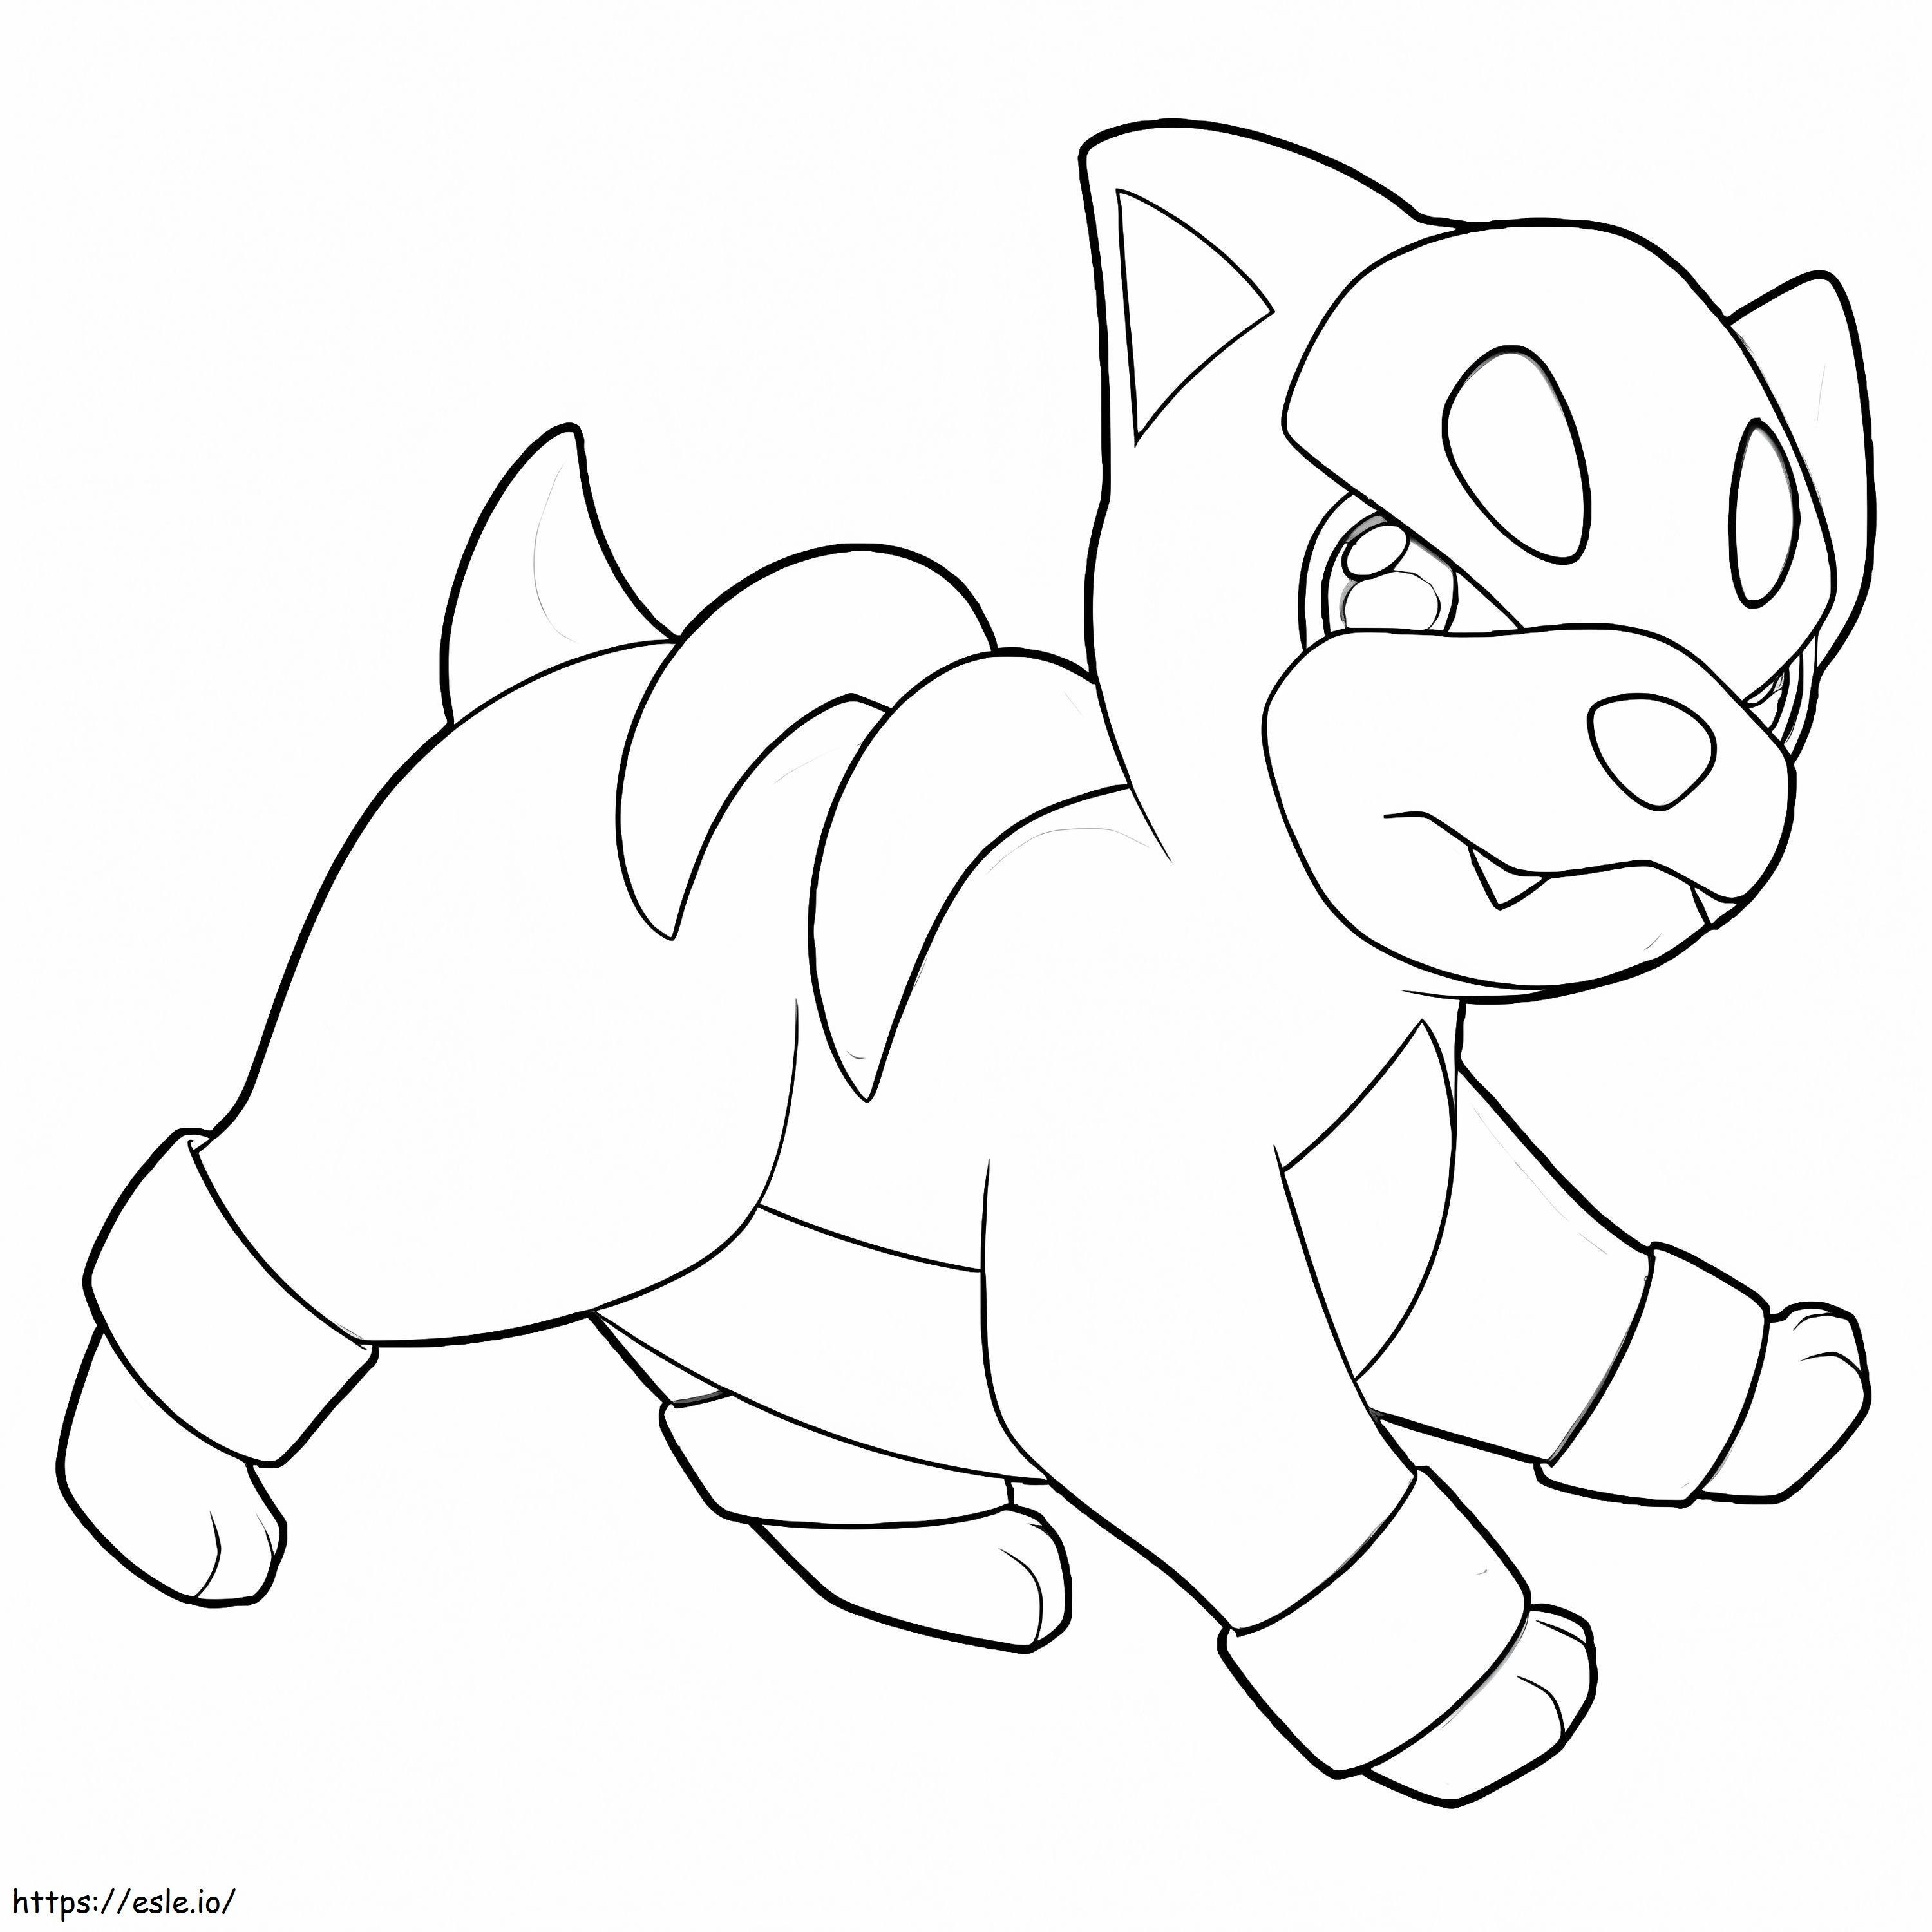 Coloriage Pokémon Houndour mignon à imprimer dessin